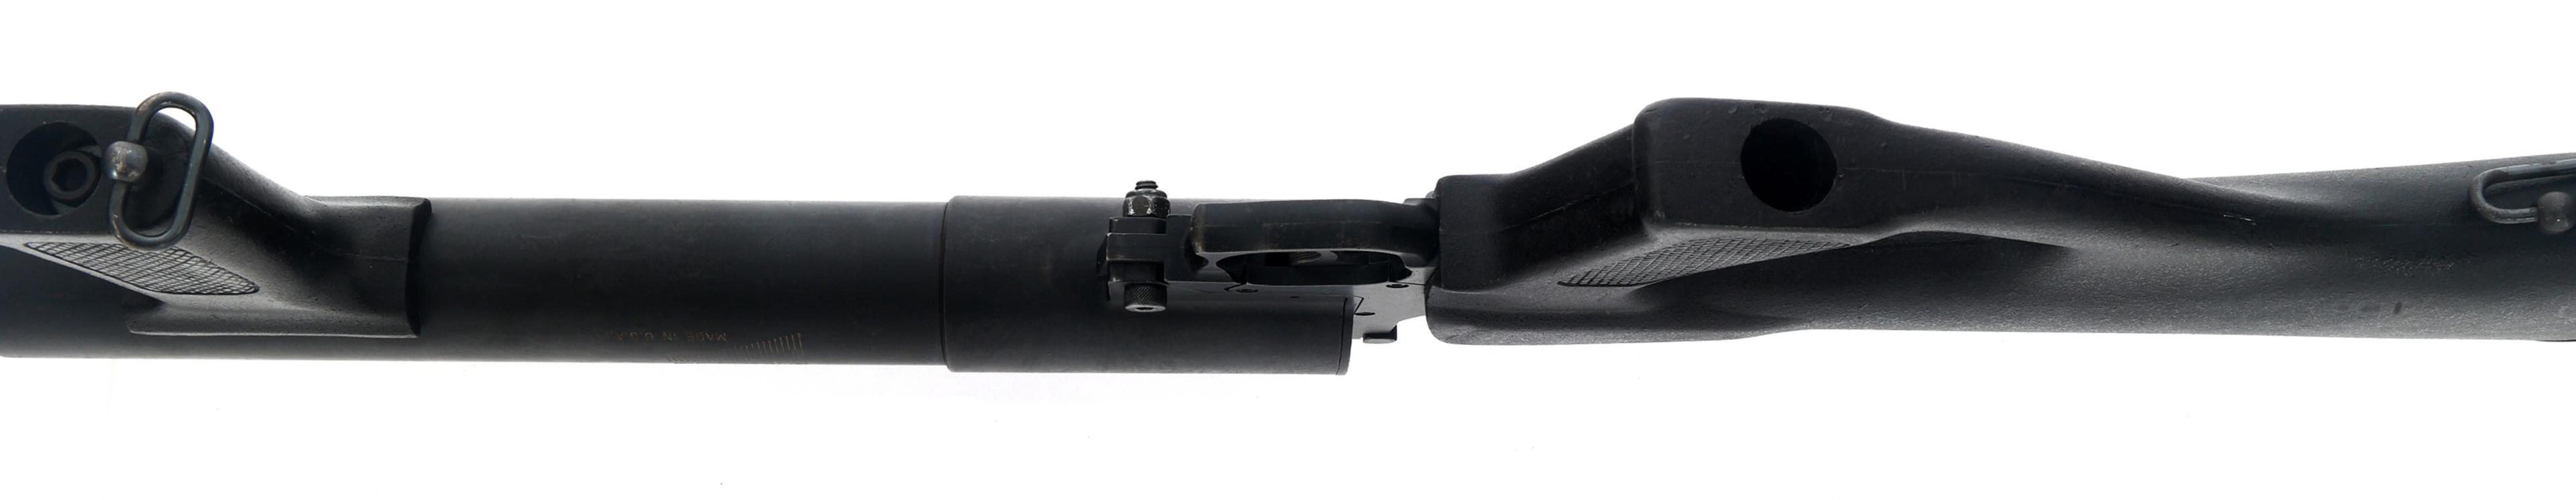 DEF-TEC CORP MODEL 1315 37mm GAS GUN